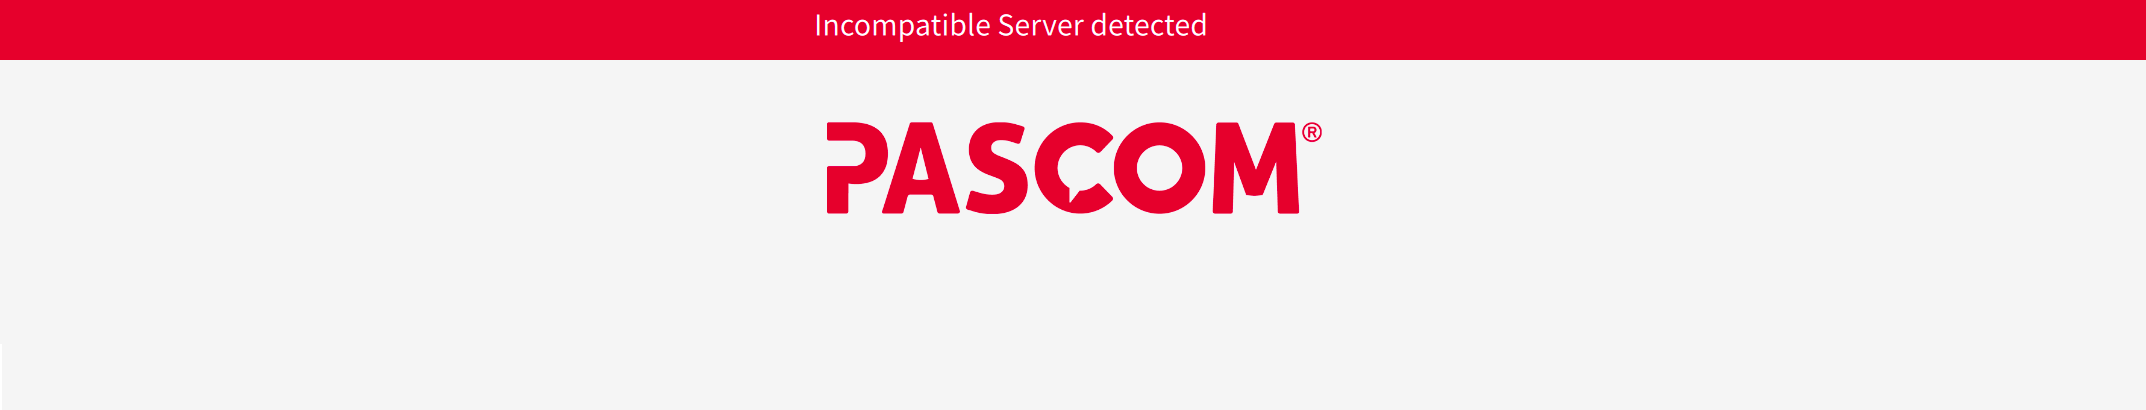 pascom onsite client error message